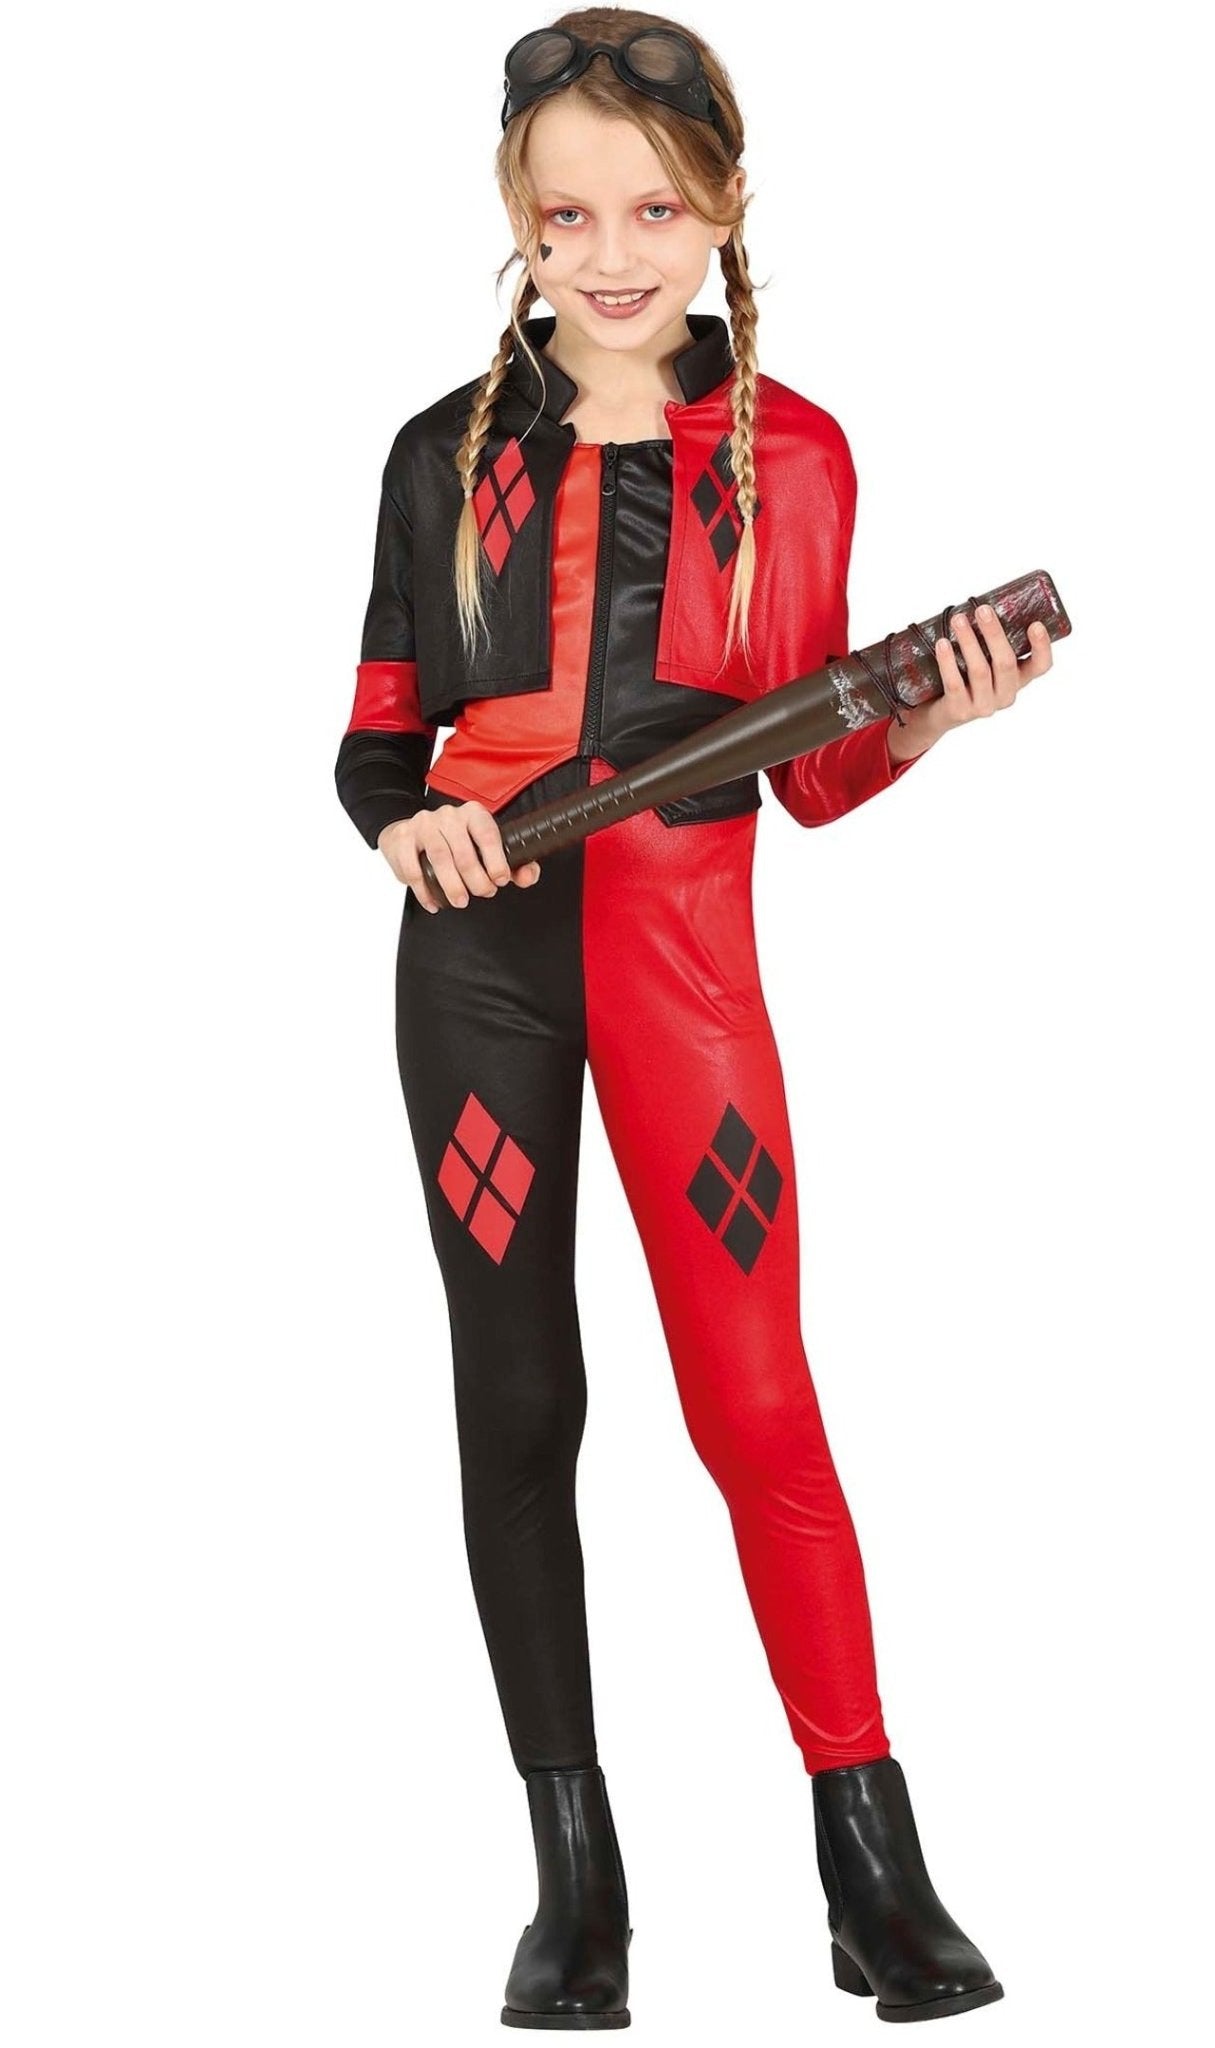 Acquista online il costume Harley Squad per bambina